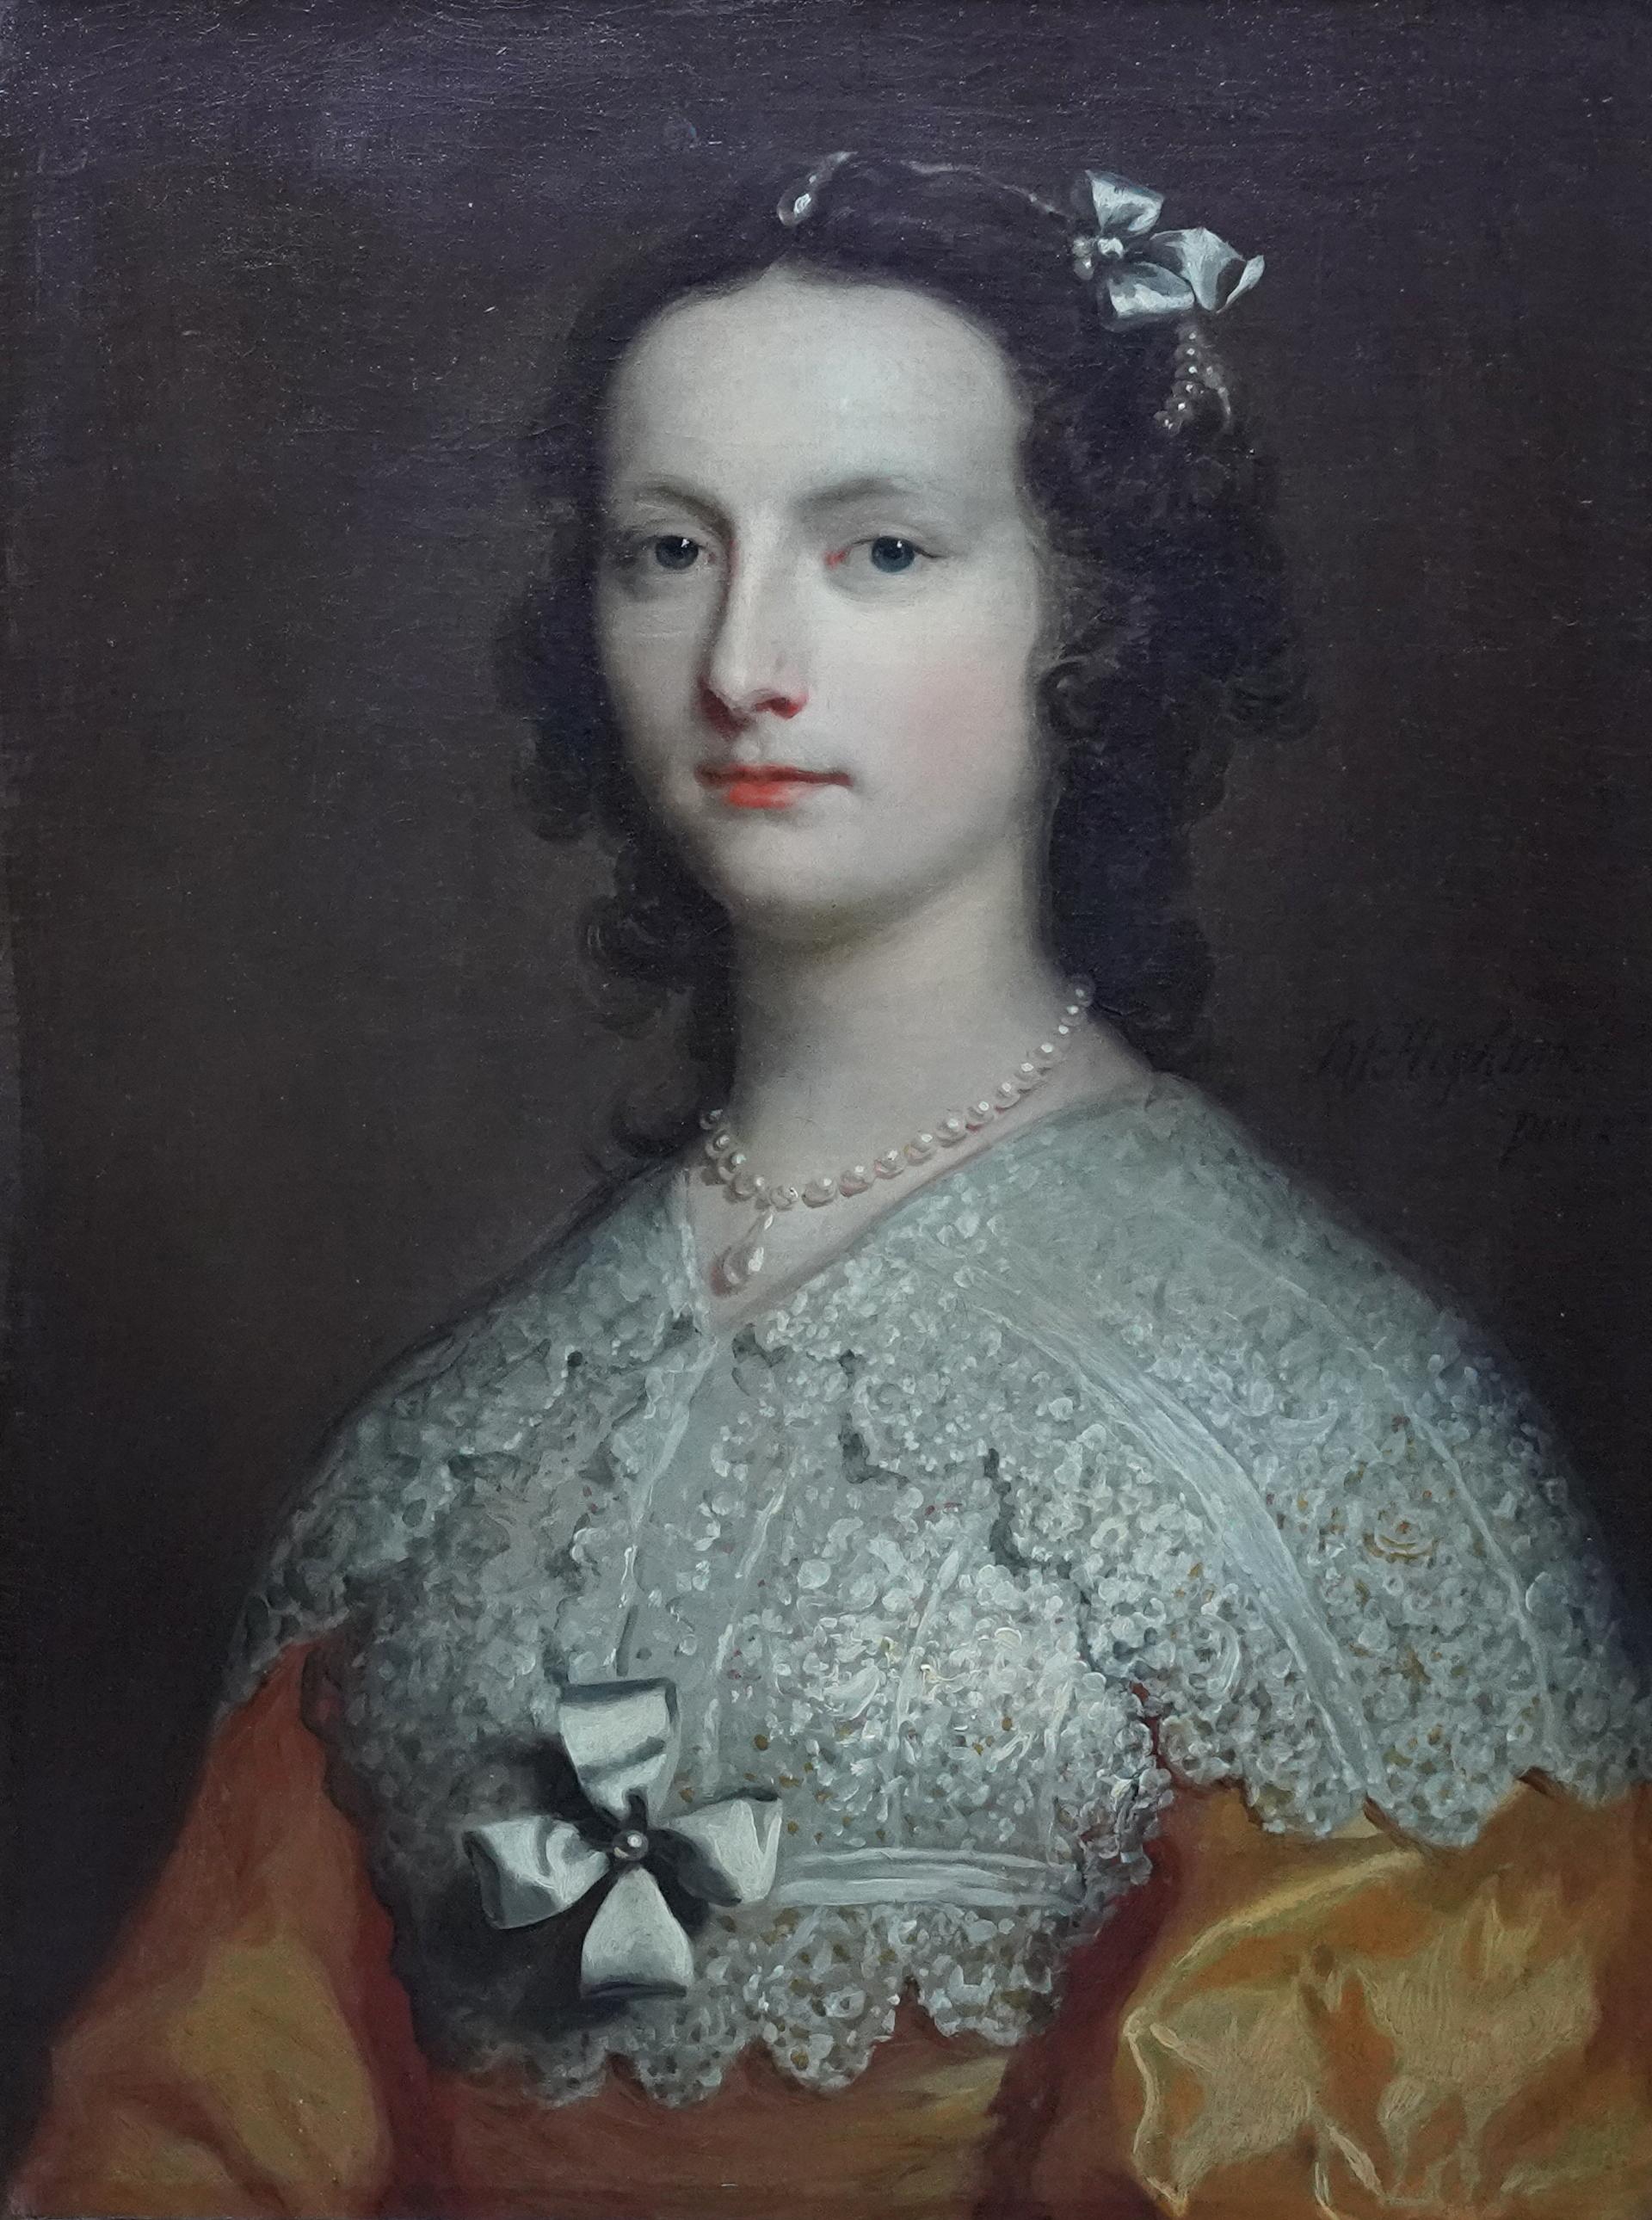 Porträt von Elizabeth Banks – britisches Ölgemälde eines Alten Meisters aus dem 18. Jahrhundert – Painting von Joseph Highmore